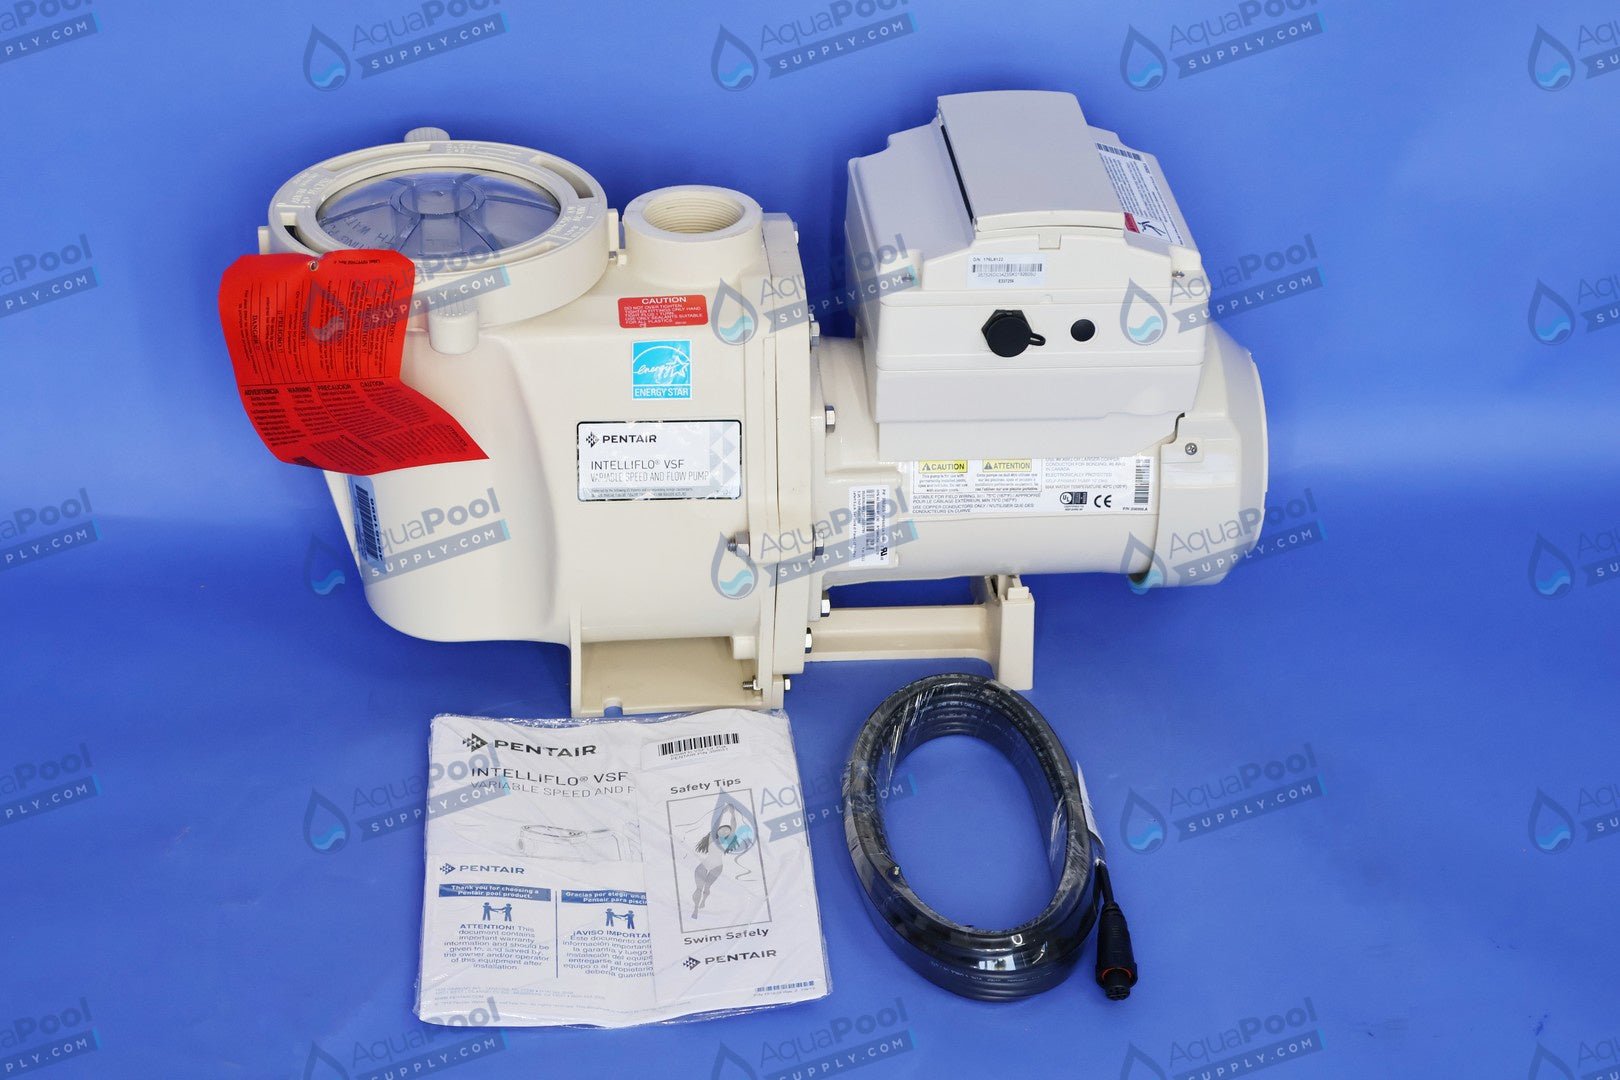 Pentair IntelliFlo® Variable Speed Pump EC-011028 (011056) - Variable Speed Pumps - img-8